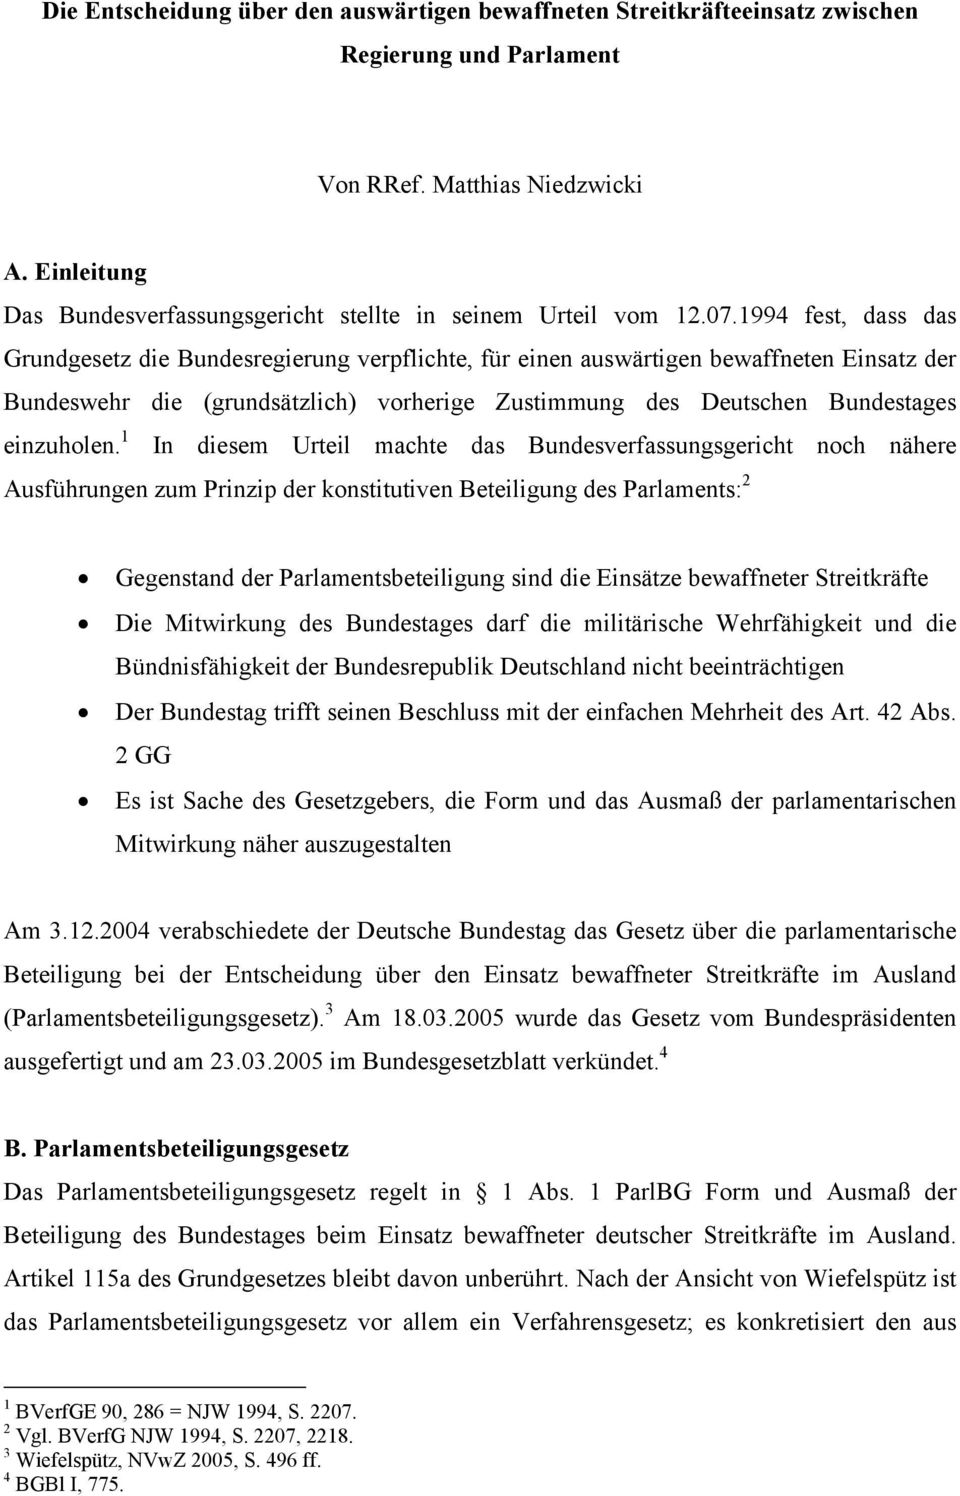 1994 fest, dass das Grundgesetz die Bundesregierung verpflichte, für einen auswärtigen bewaffneten Einsatz der Bundeswehr die (grundsätzlich) vorherige Zustimmung des Deutschen Bundestages einzuholen.